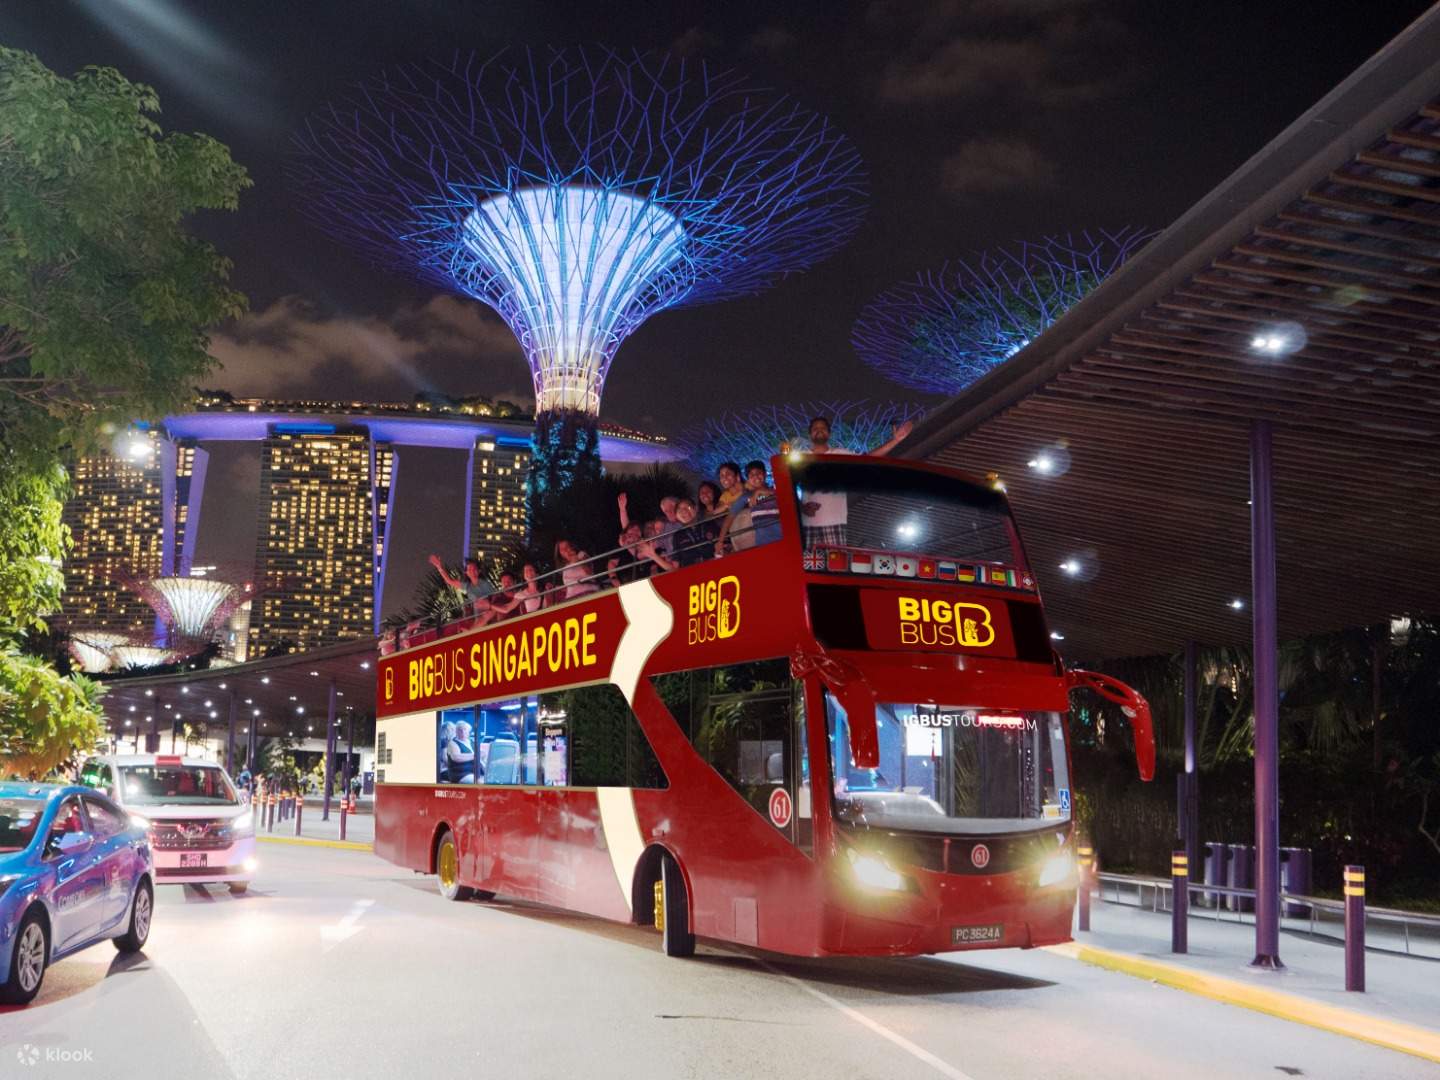 Ưu điểm của việc đi du lịch đến Singapore bằng xe buýt: Đây là phương thức vận chuyển tốt nhất để chọn nếu bạn đi du lịch tiết kiệm. Bạn cảm thấy thoải mái và nếu bạn đi du lịch vào ban đêm, bạn có thể kết thúc phần lớn hành trình của mình trong khi ngủ. Ngoài ra, bạn có thể chọn từ dịch vụ xe buýt rẻ nhất đến dịch vụ tiện nghi và thoải mái nhất.  Nhược điểm của việc đi du lịch đến Singapore bằng xe buýt: Mặc dù đi du lịch đến Singapore bằng xe buýt là cách rẻ nhất nhưng đây cũng là cách sẽ mất rất nhiều thời gian để đưa bạn đến điểm đến của mình. Bạn có chắc về việc ngồi trên xe buýt lâu như vậy không?